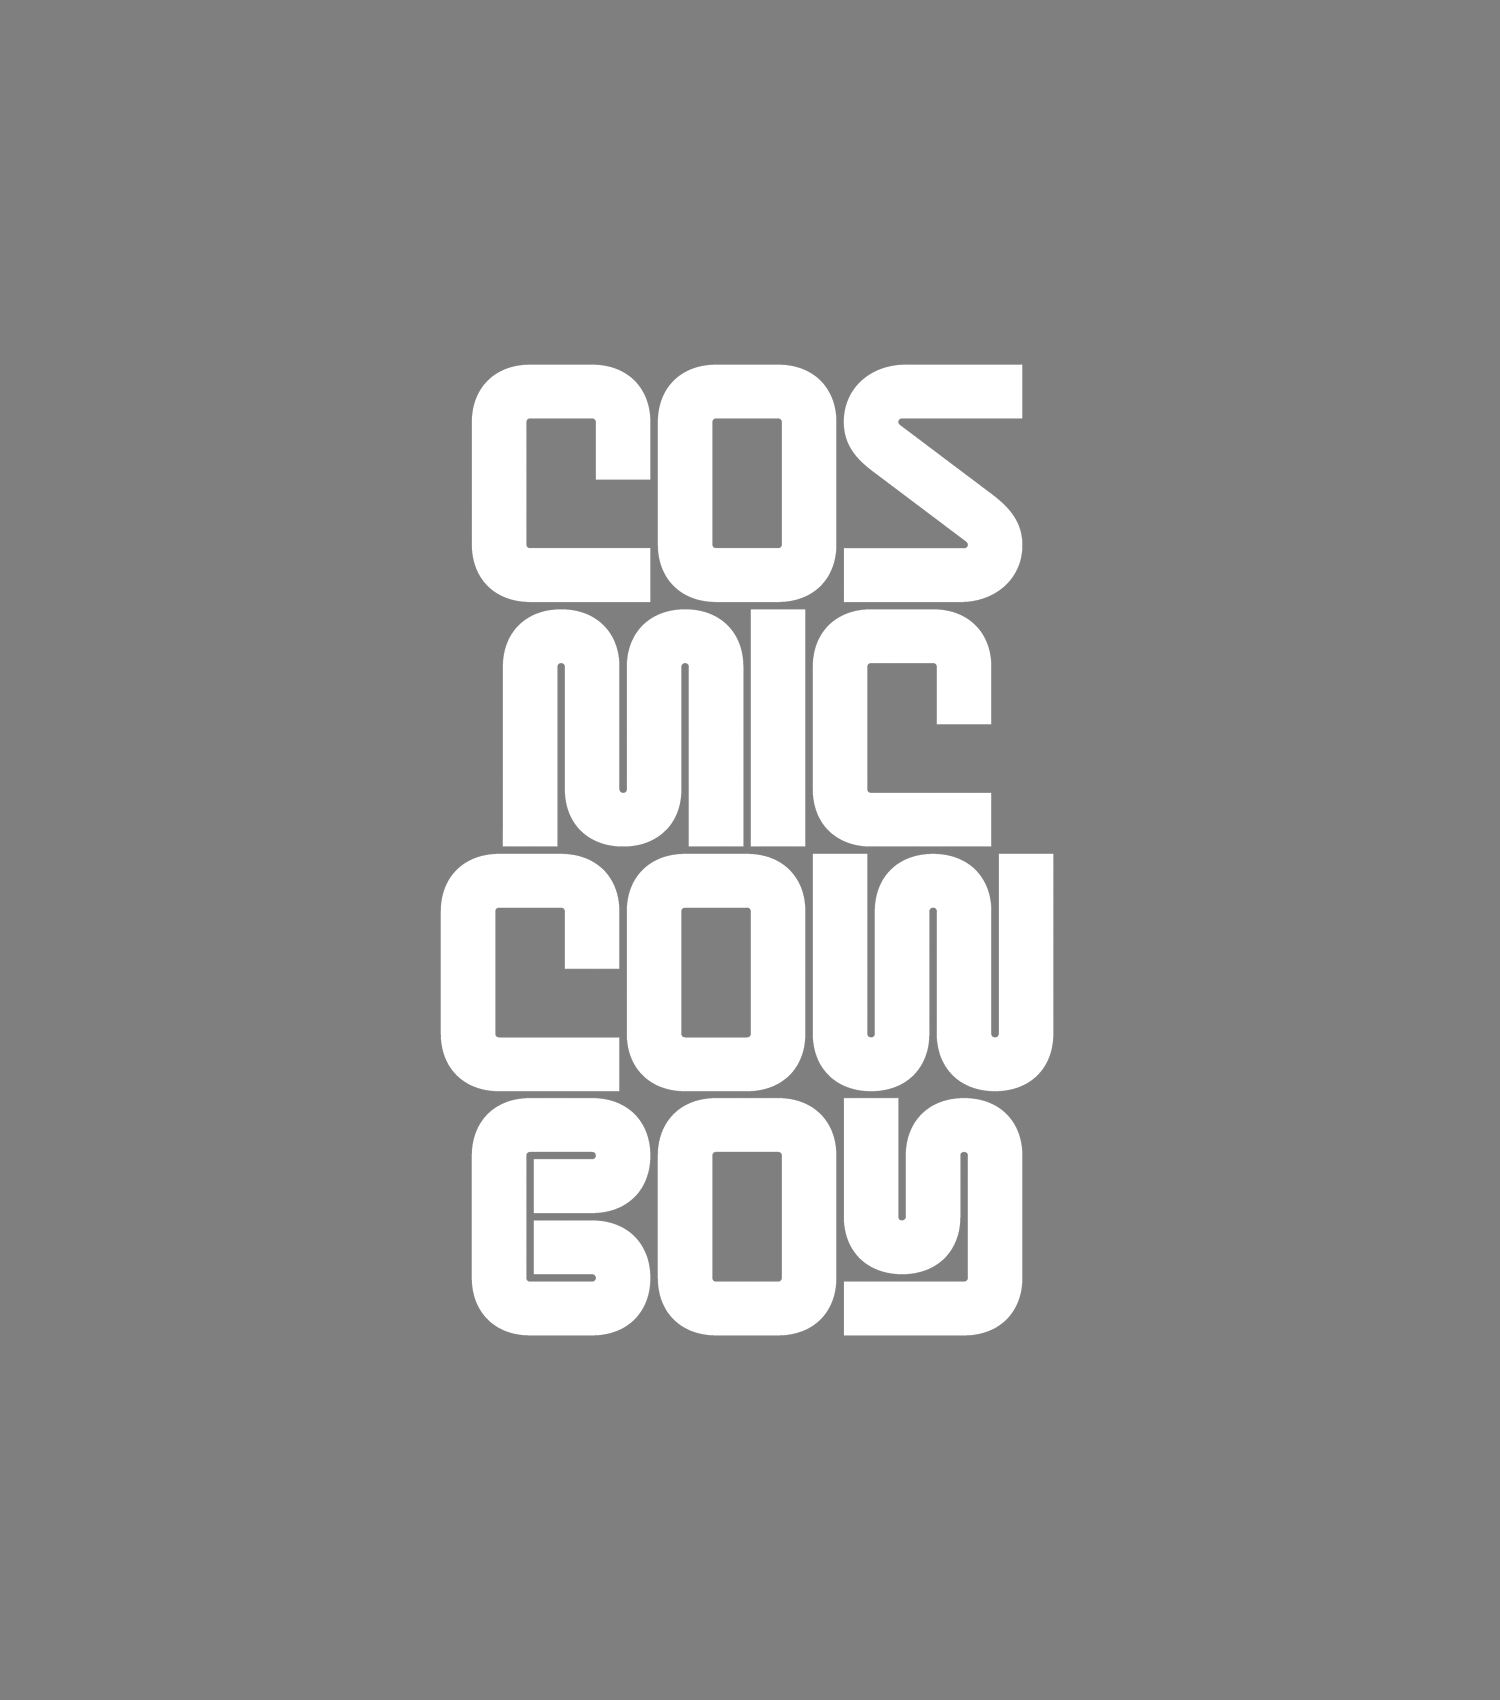 Cosmic Cowboy extrait de parfum by Perfumehead. 50ml bottle.